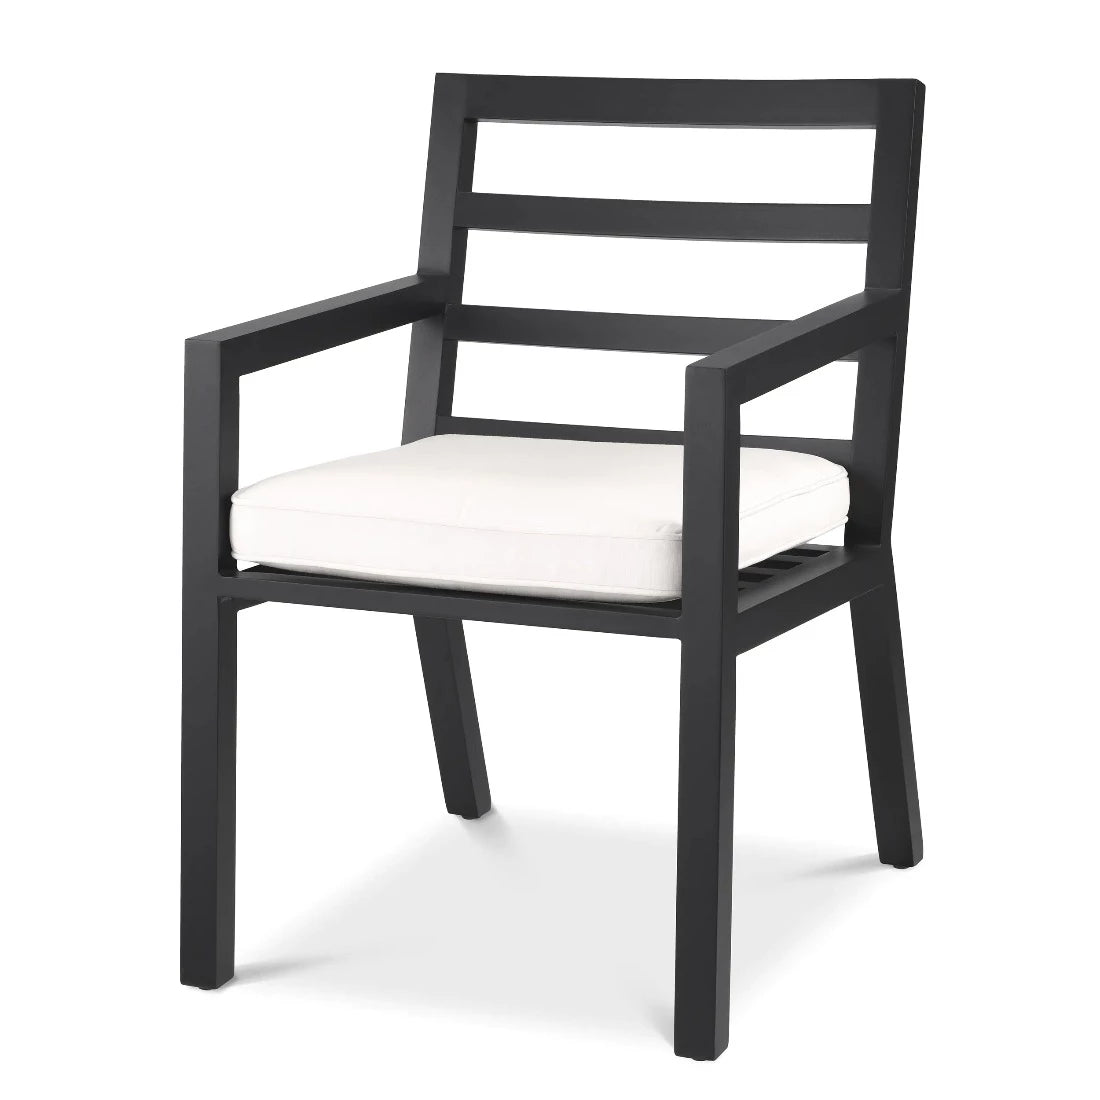 Dining chair Eichholtz Delta outdoor black